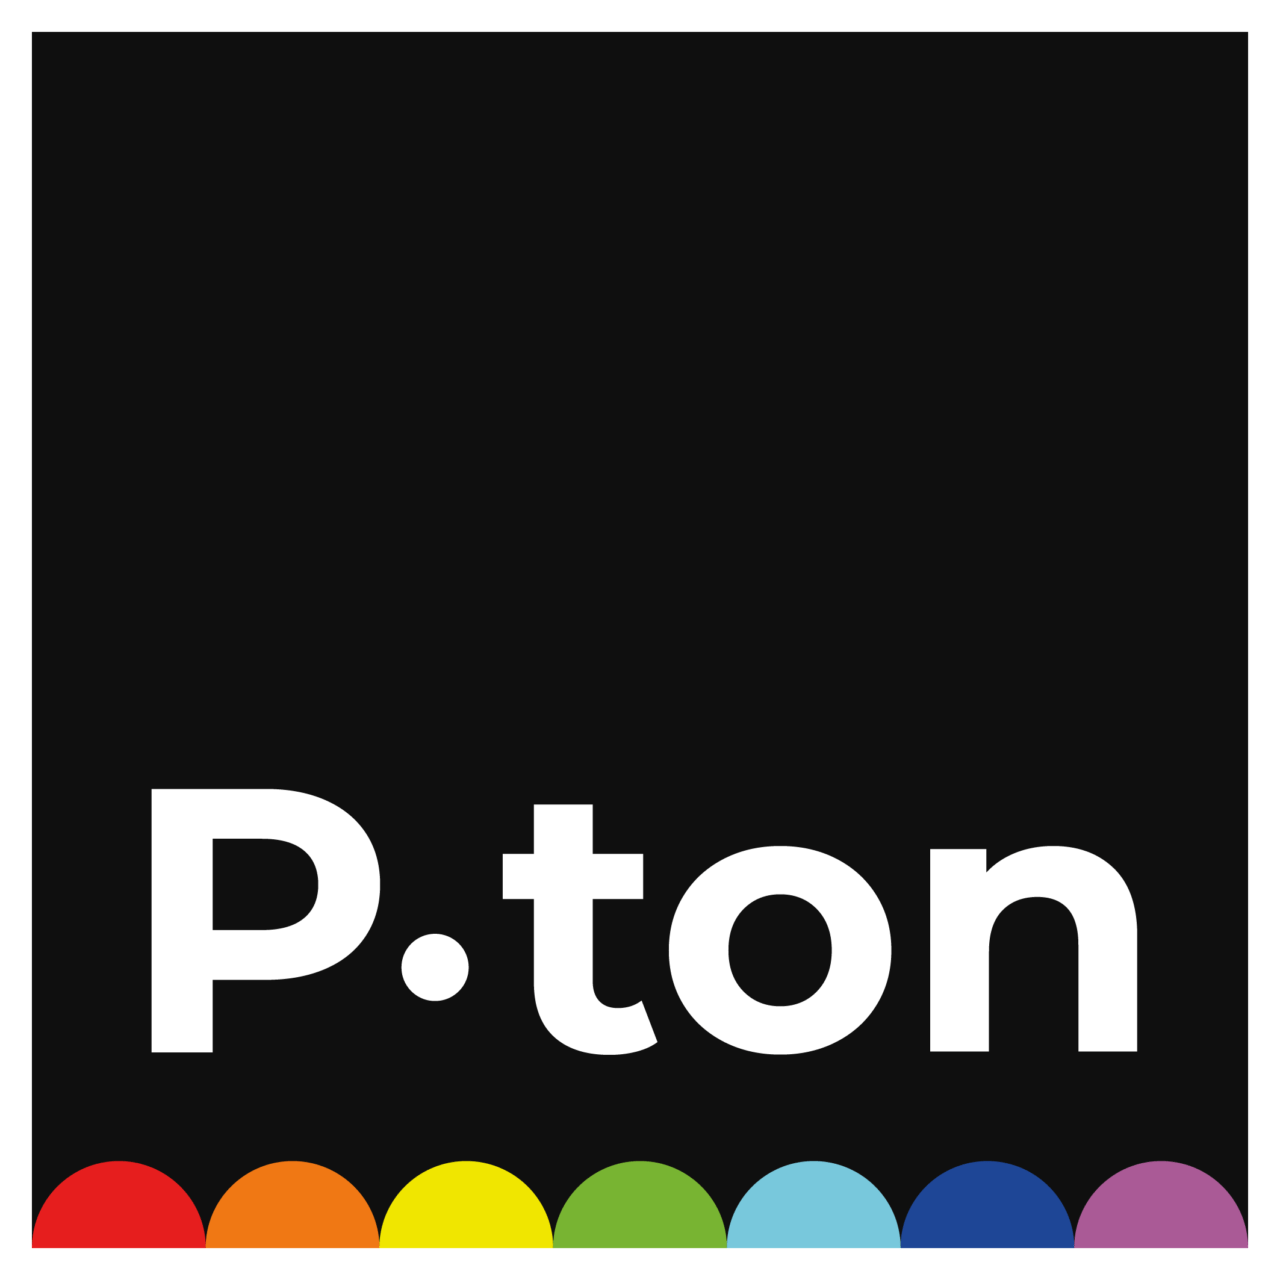 P-ton AG